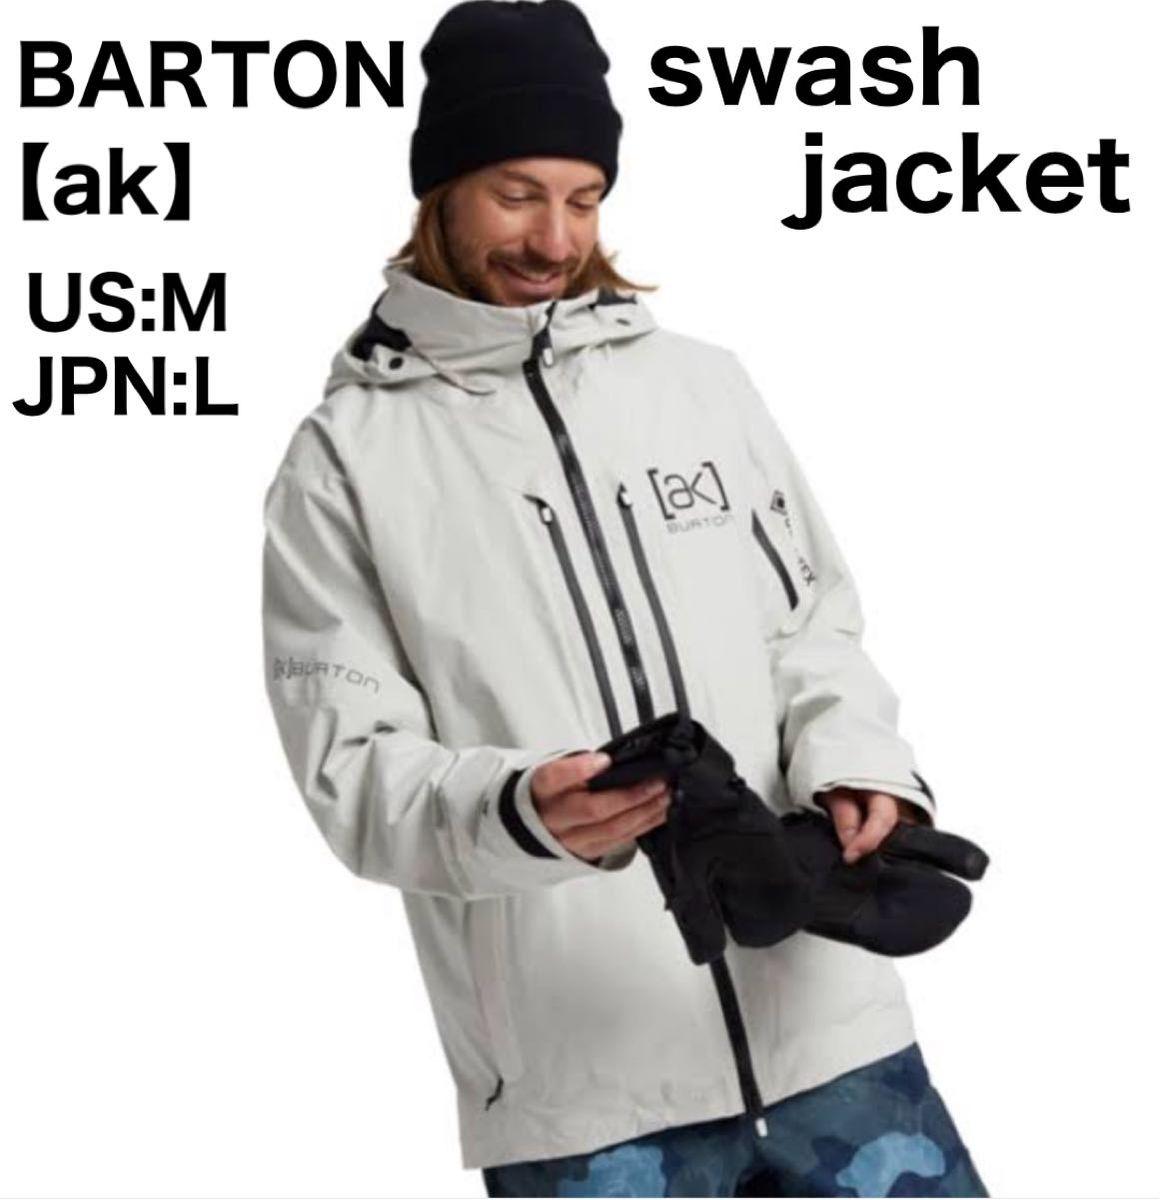 BARTON バートン ak スウッシュ ジャケット swash jacket スノーボード スノボー スキー